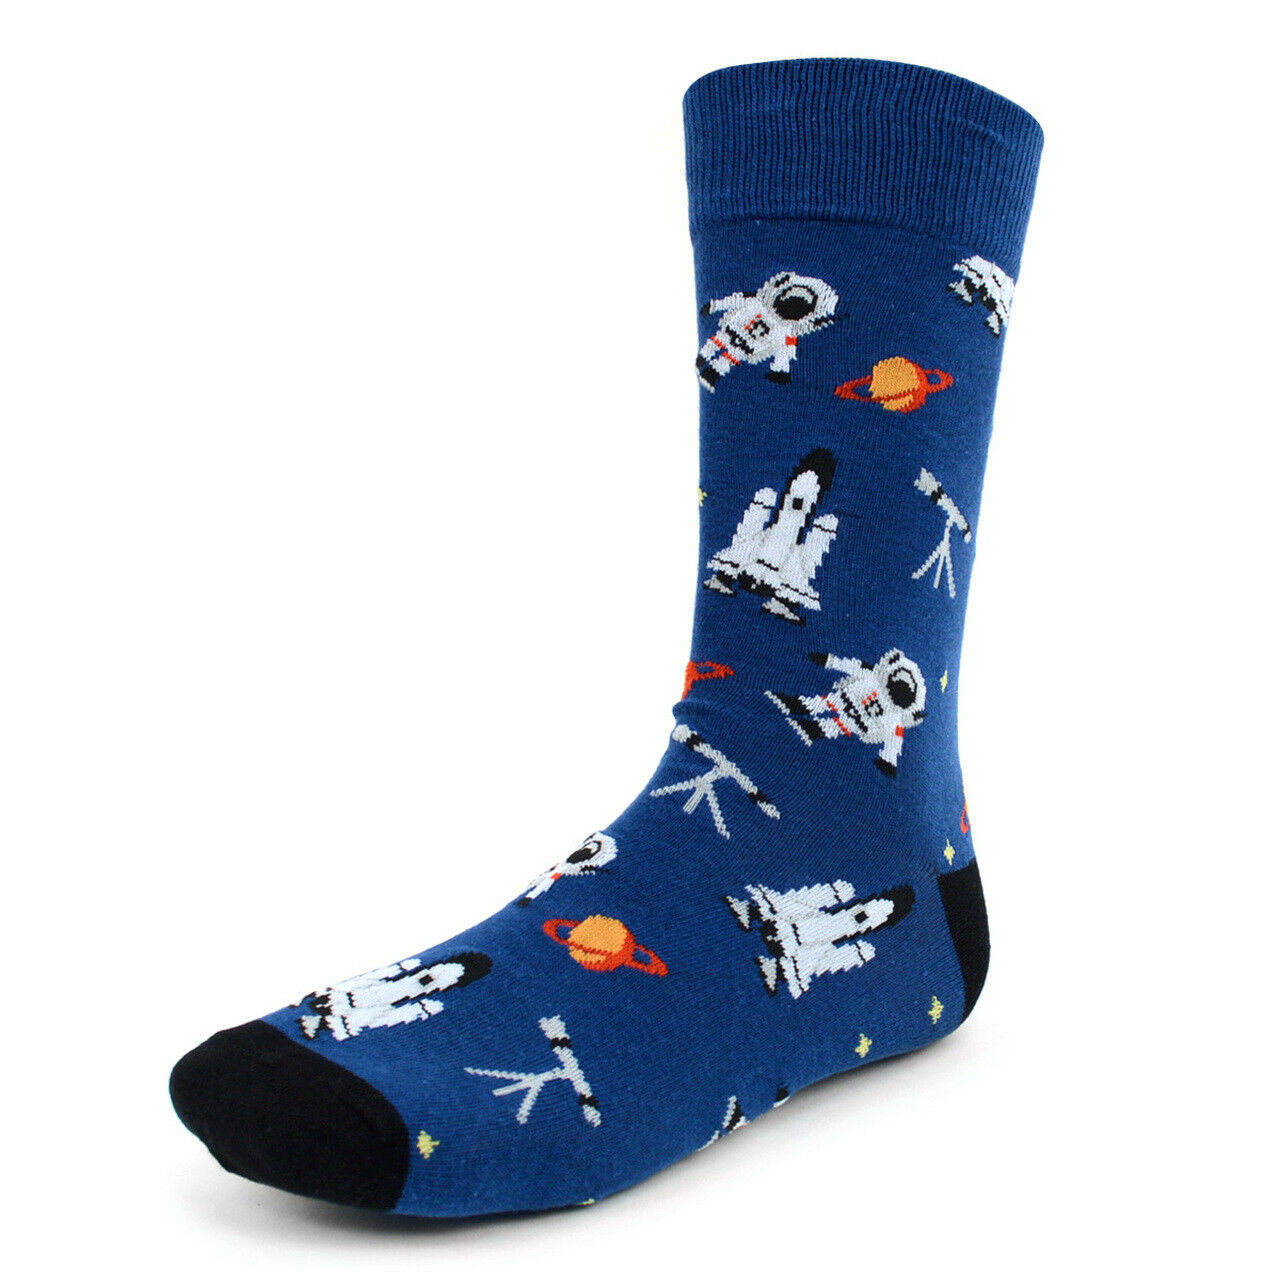 Parquet Men's Crew Novelty Socks Astronaut Space Shoe Size 6-12.5 Blue Color